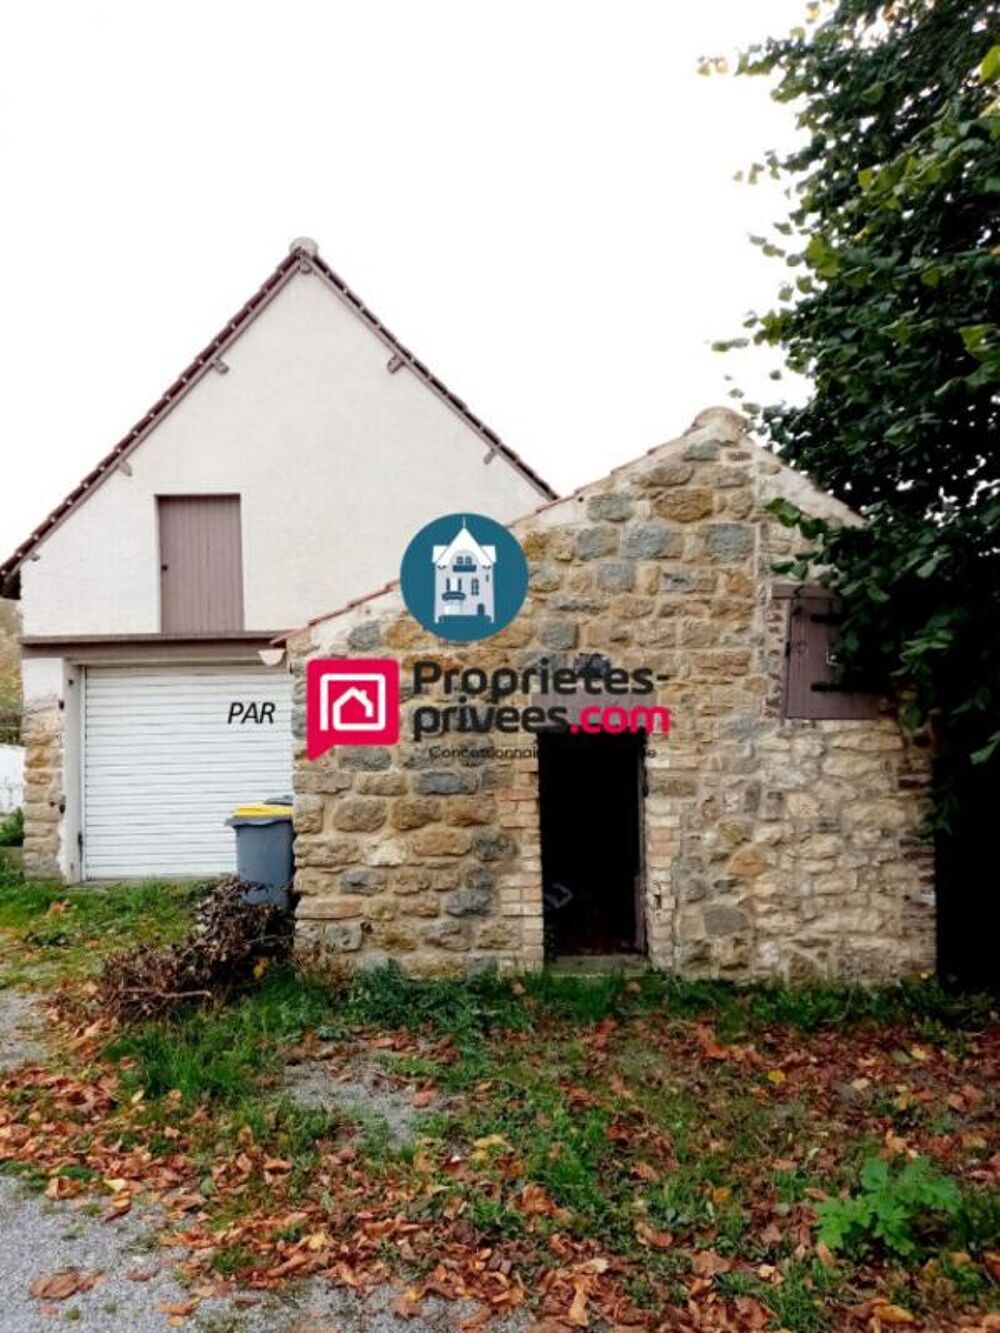 Vente Maison L'Agence Wimereusienne par Proprits-Prives.com vous propose : Saint leonard